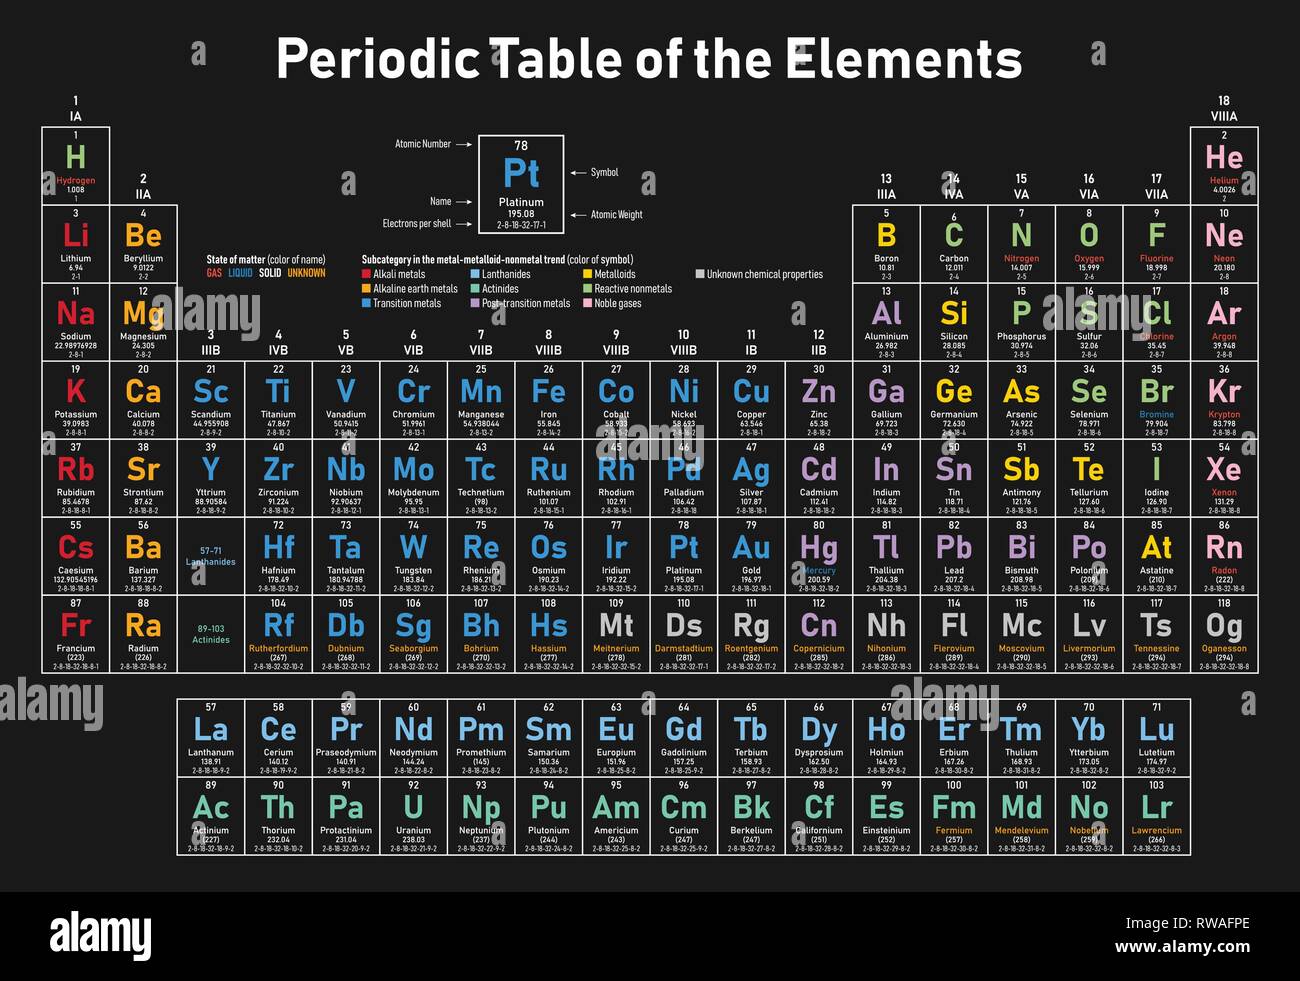 Colorful Tableau périodique des éléments - affiche numéro atomique, le symbole, le nom, le poids atomique, les électrons par shell, état de la matière et catégorie de l'élément Illustration de Vecteur